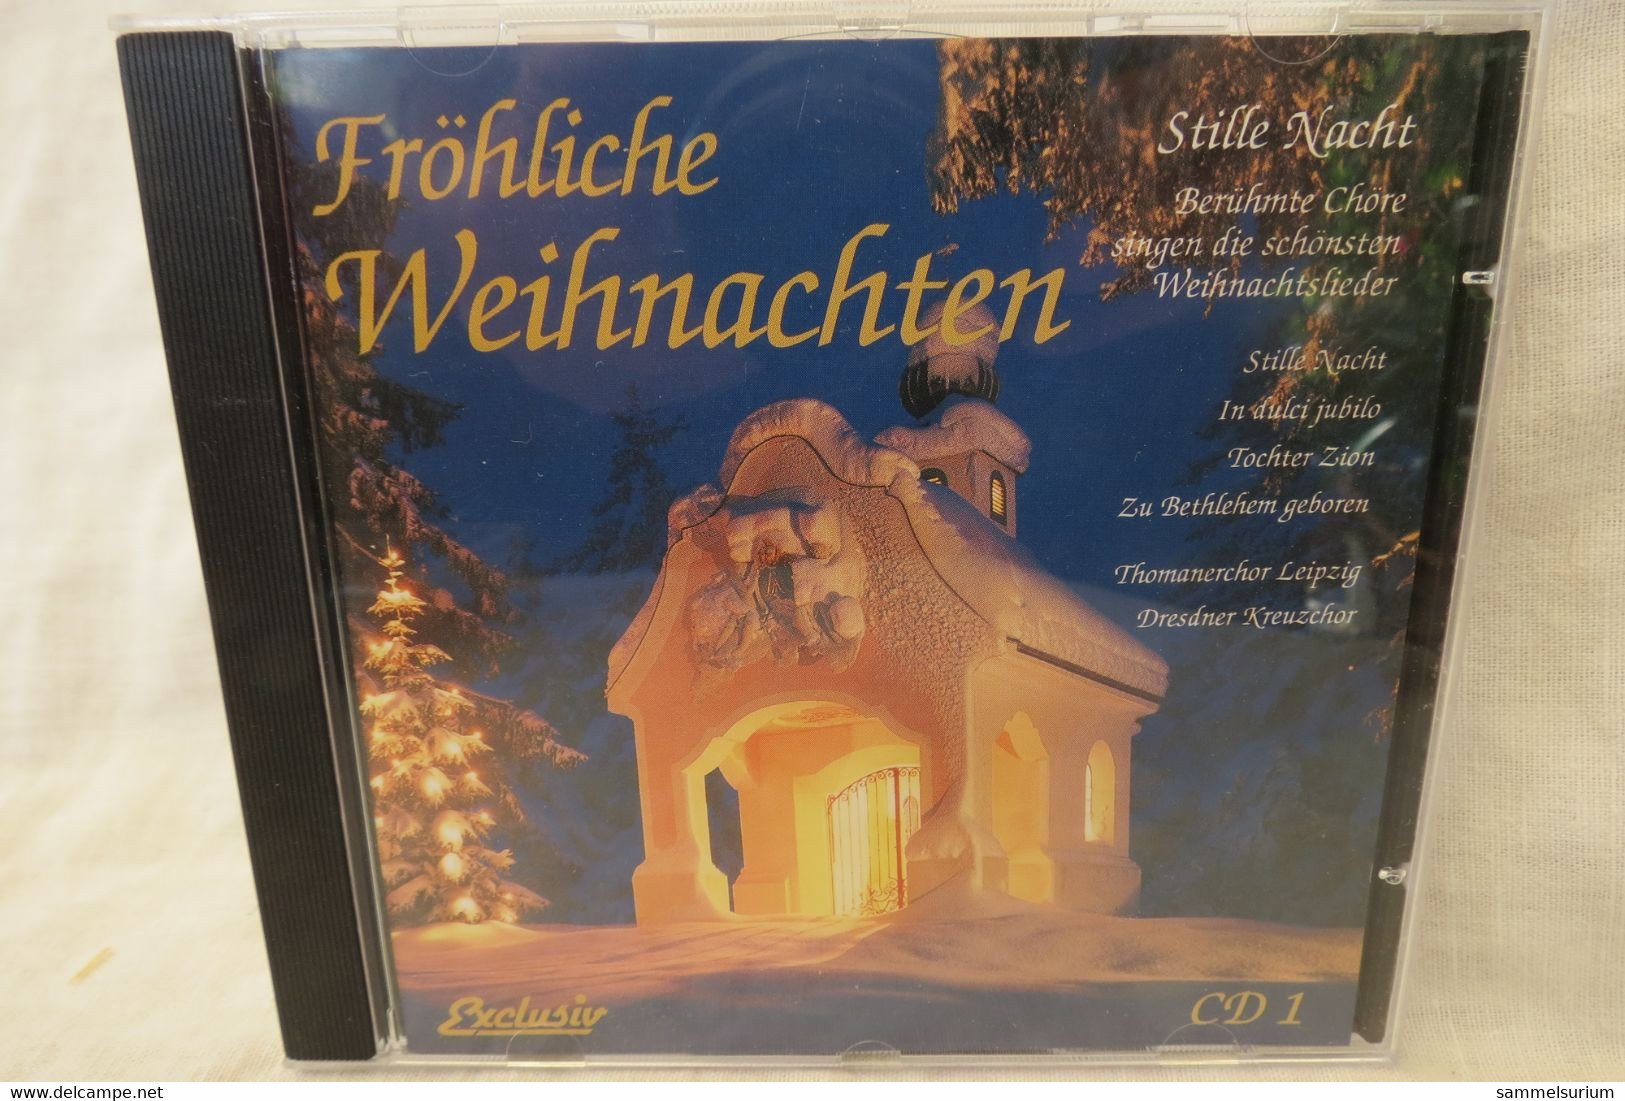 4 CDs "Fröhliche Weihnachten" Berühmte Chöre, Internationale Weihnachtslieder, Gitarrenmusik, Stars Singen Weihnachtslie - Chants De Noel